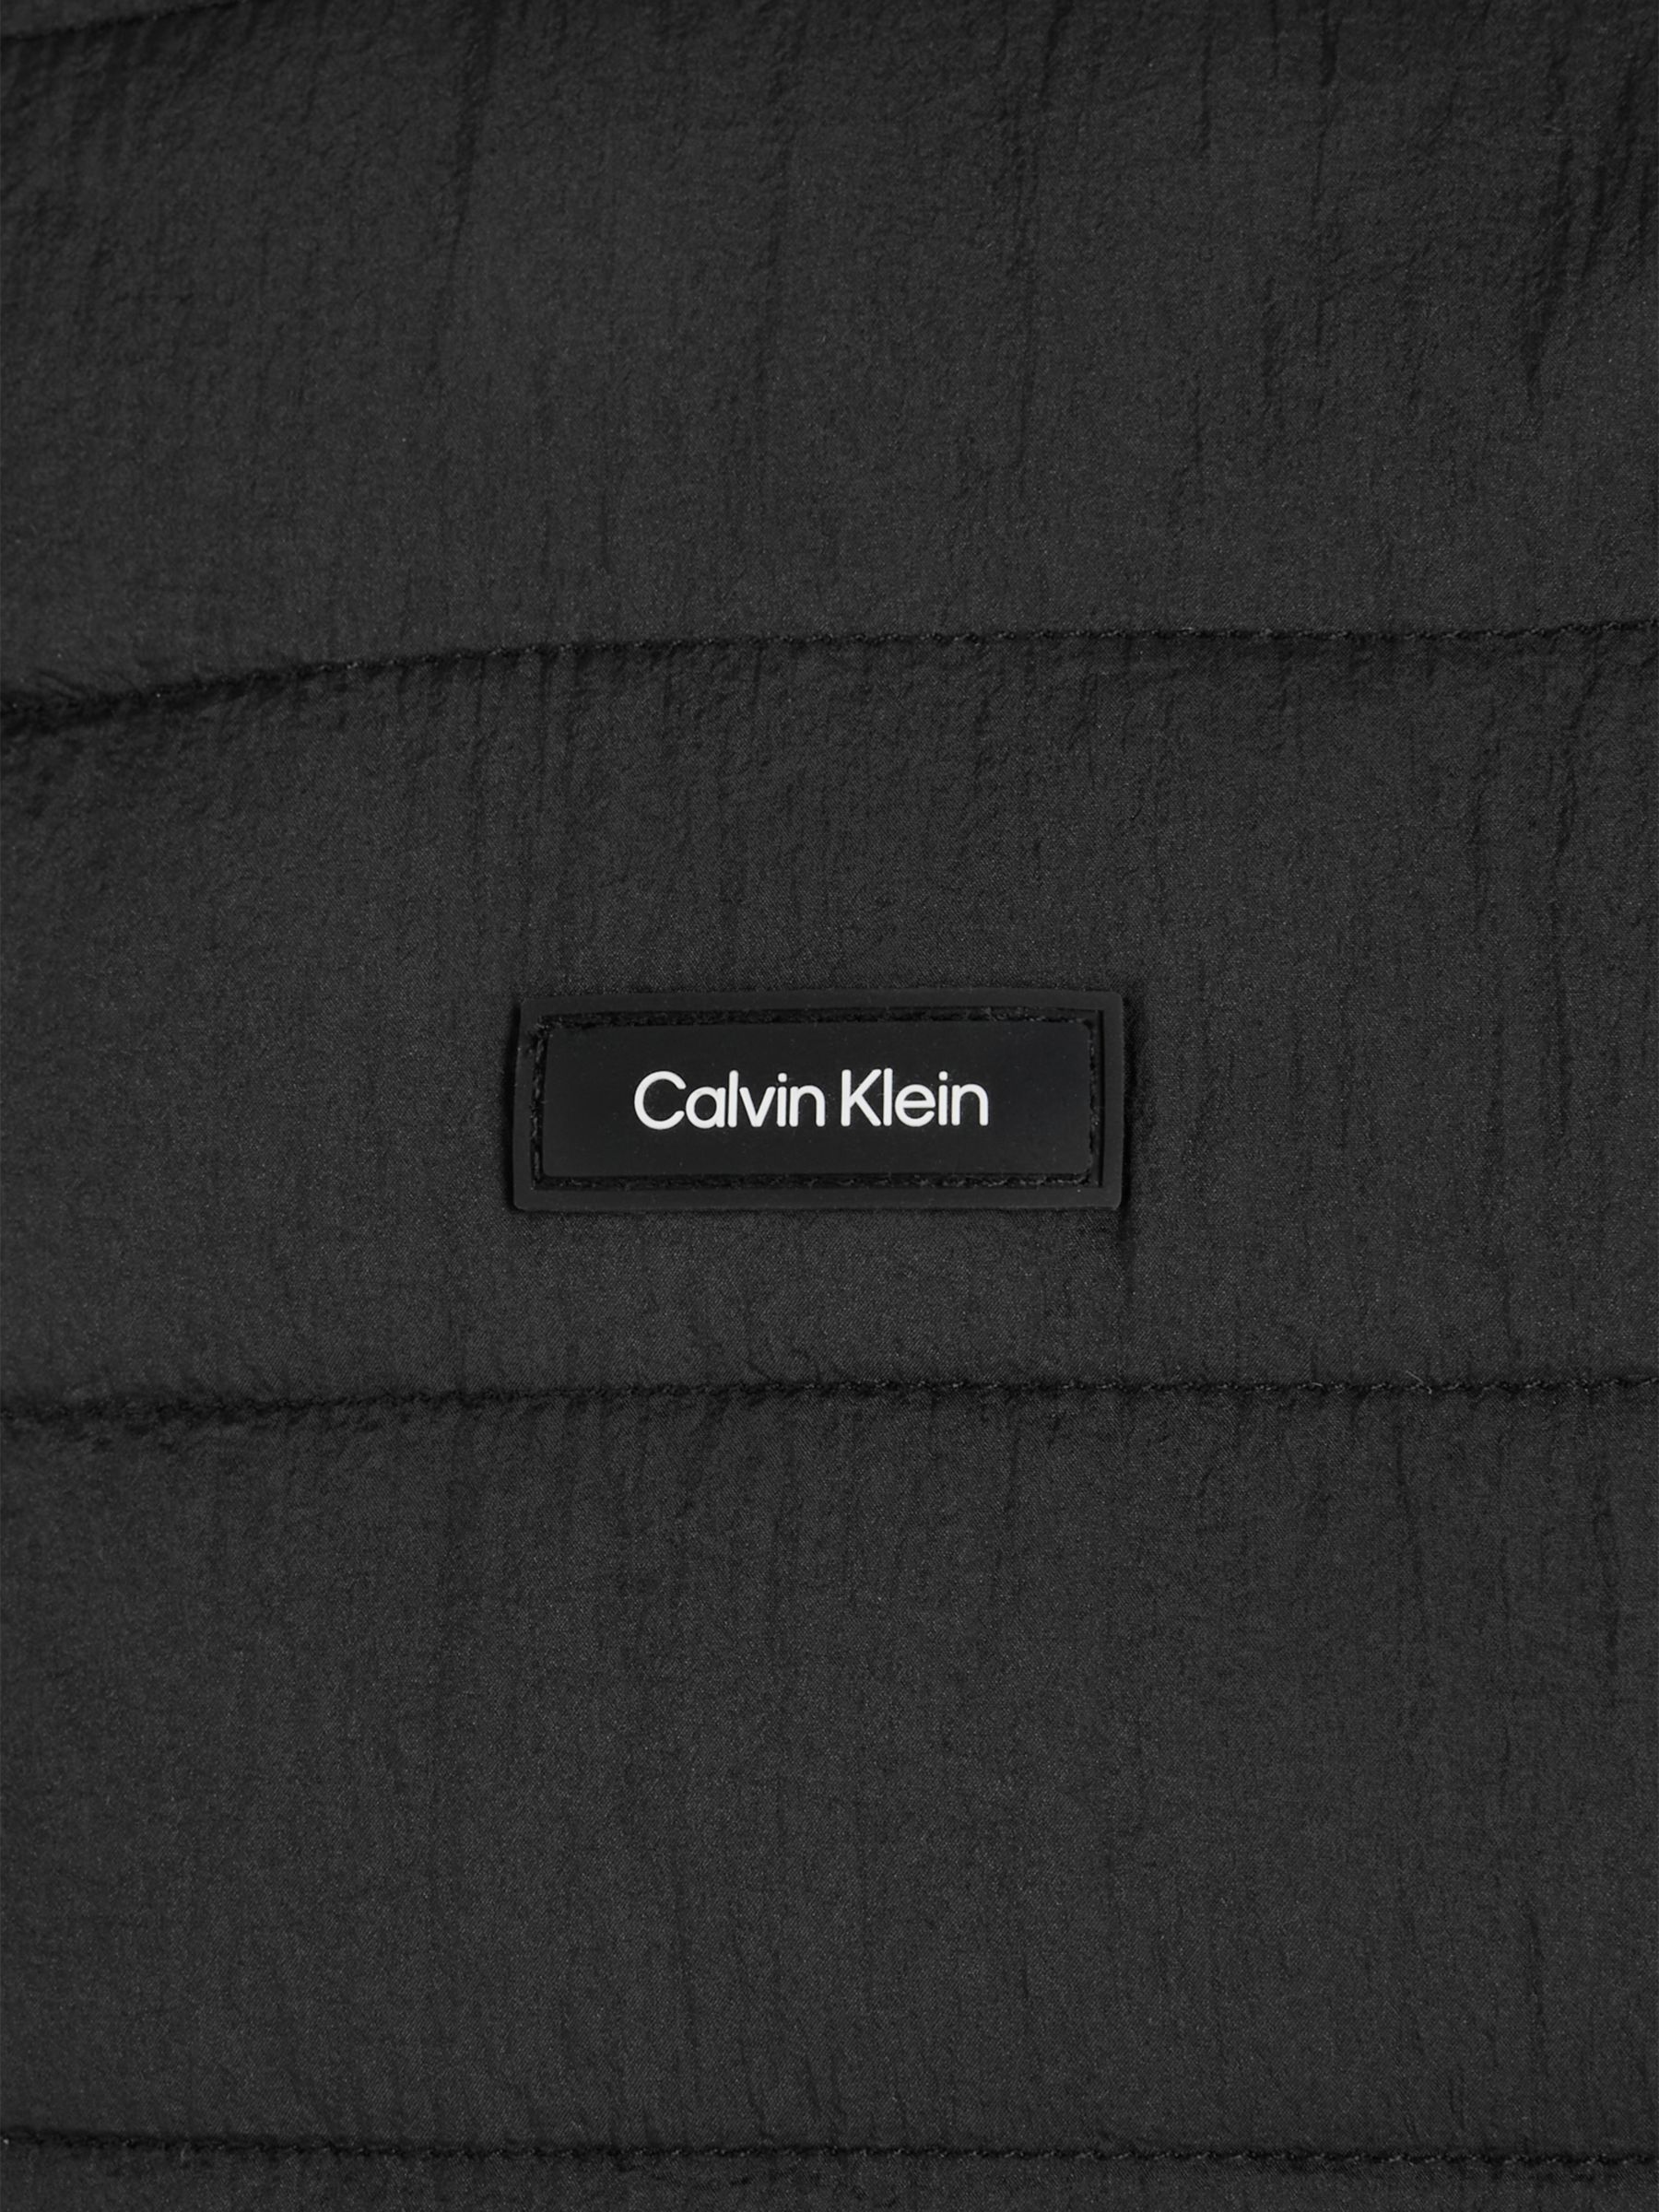 Calvin Klein Crinkle Quilt Gilet, Black, S